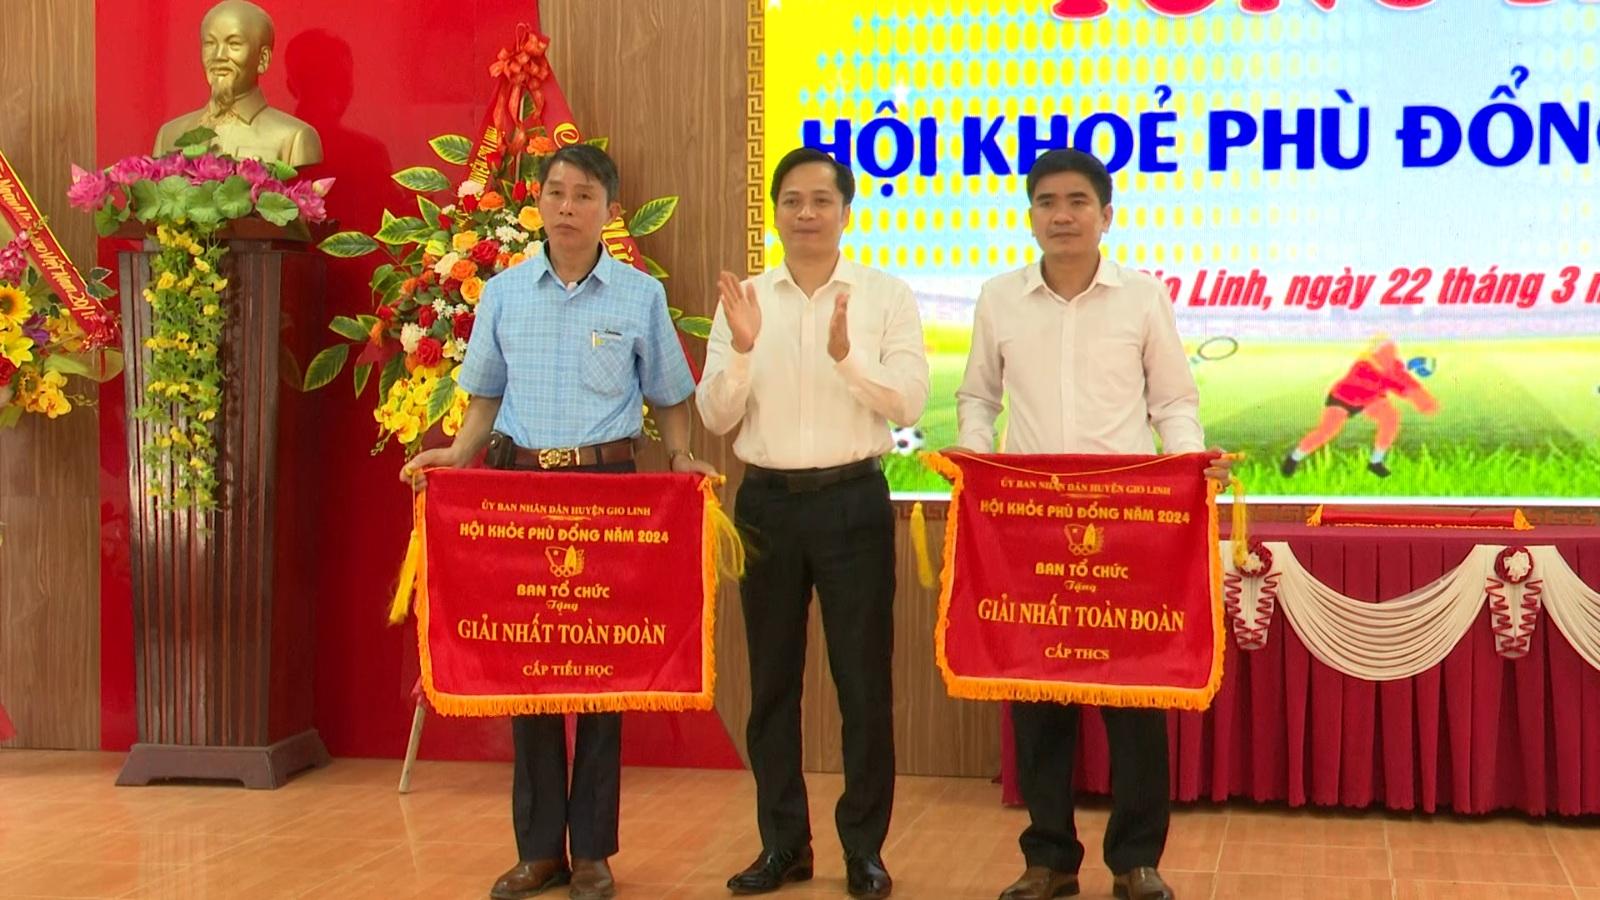 UBND huyện Gio Linh tổ chức tổng kết Hội khỏe Phù Đổng huyện Gio Linh lần thứ XIII, năm 2024